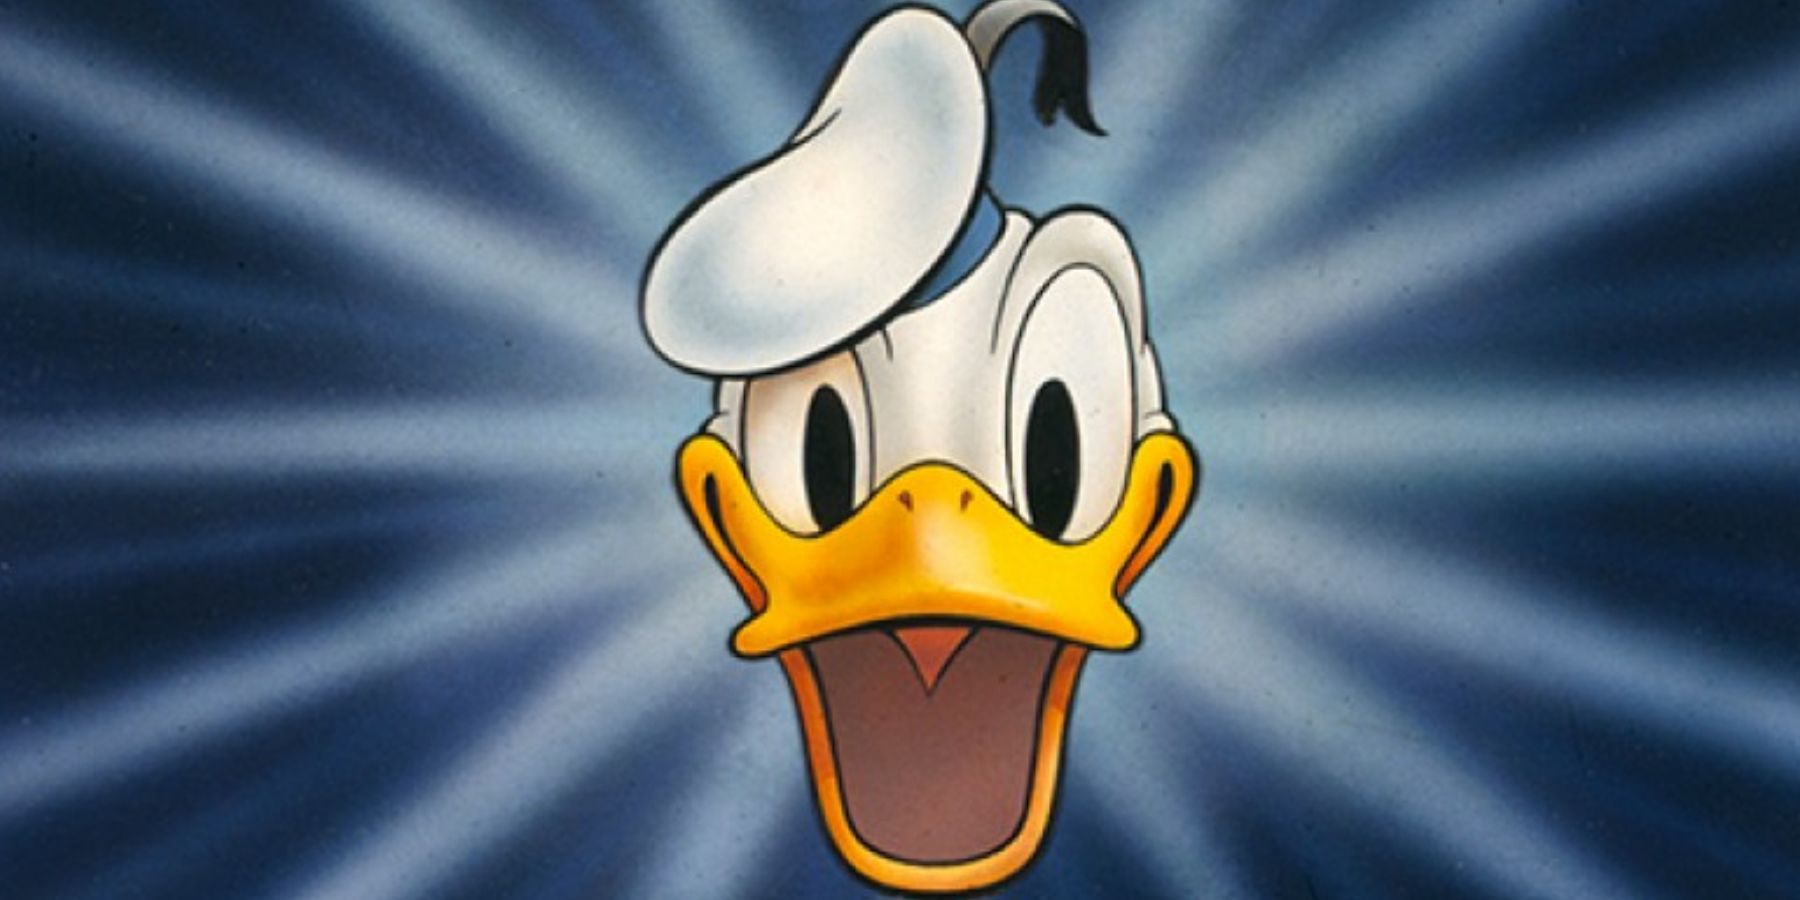 donald-duck-cartoon-opener